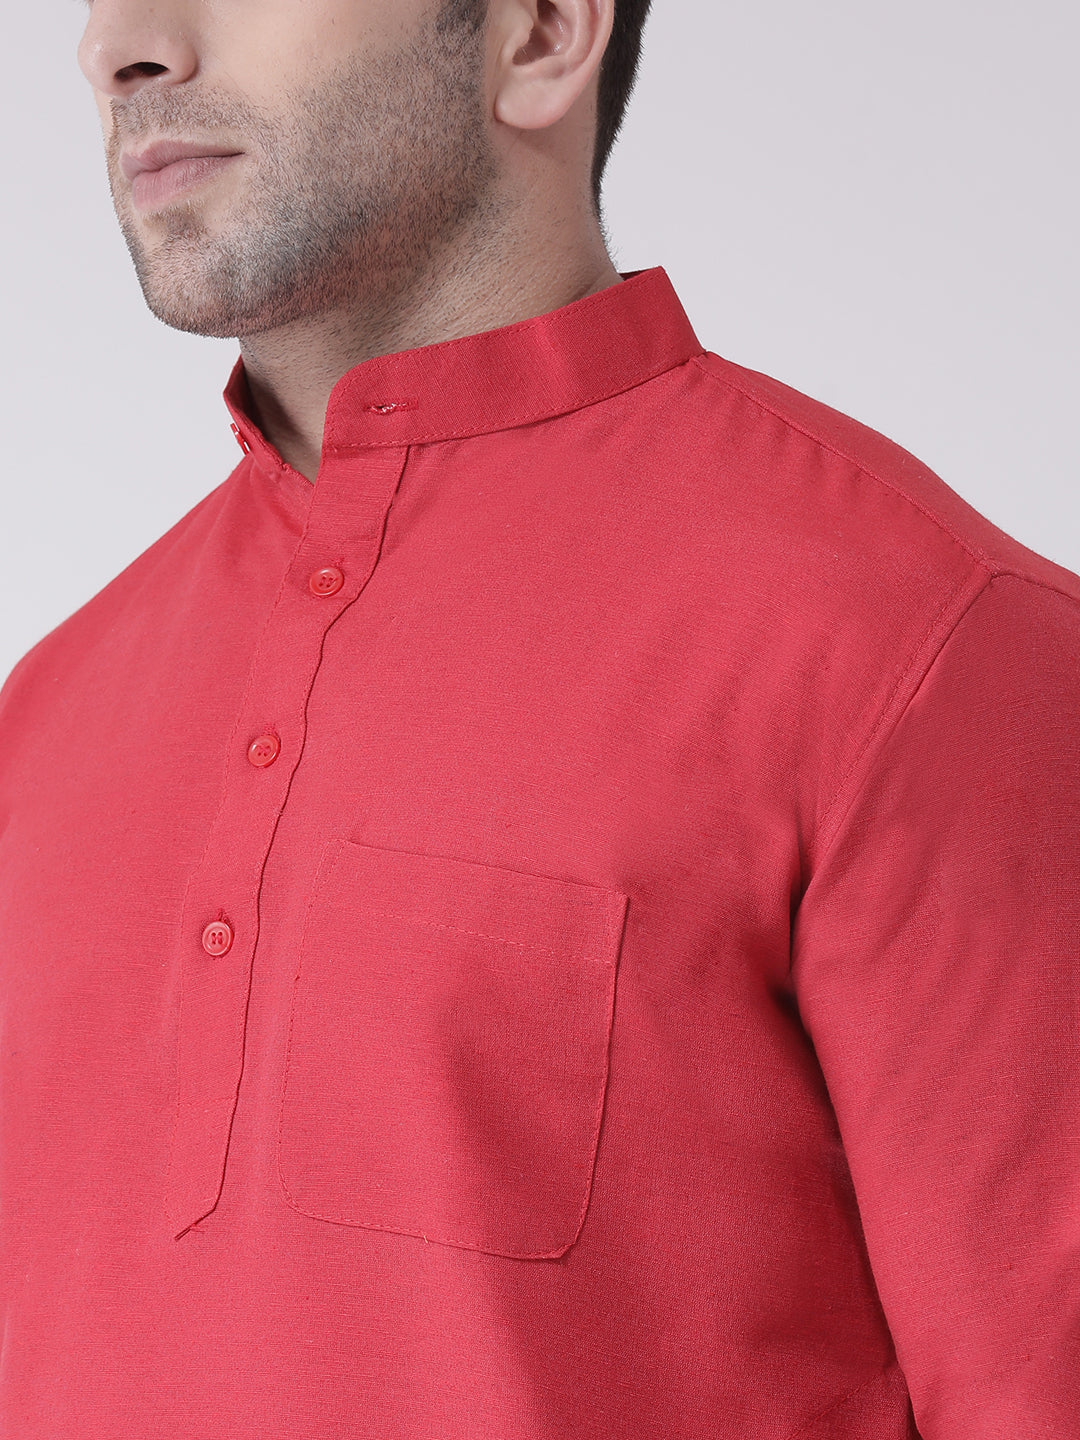 RIAG Red Men's Ethnic Long Kurta And Pyjama Set - Distacart